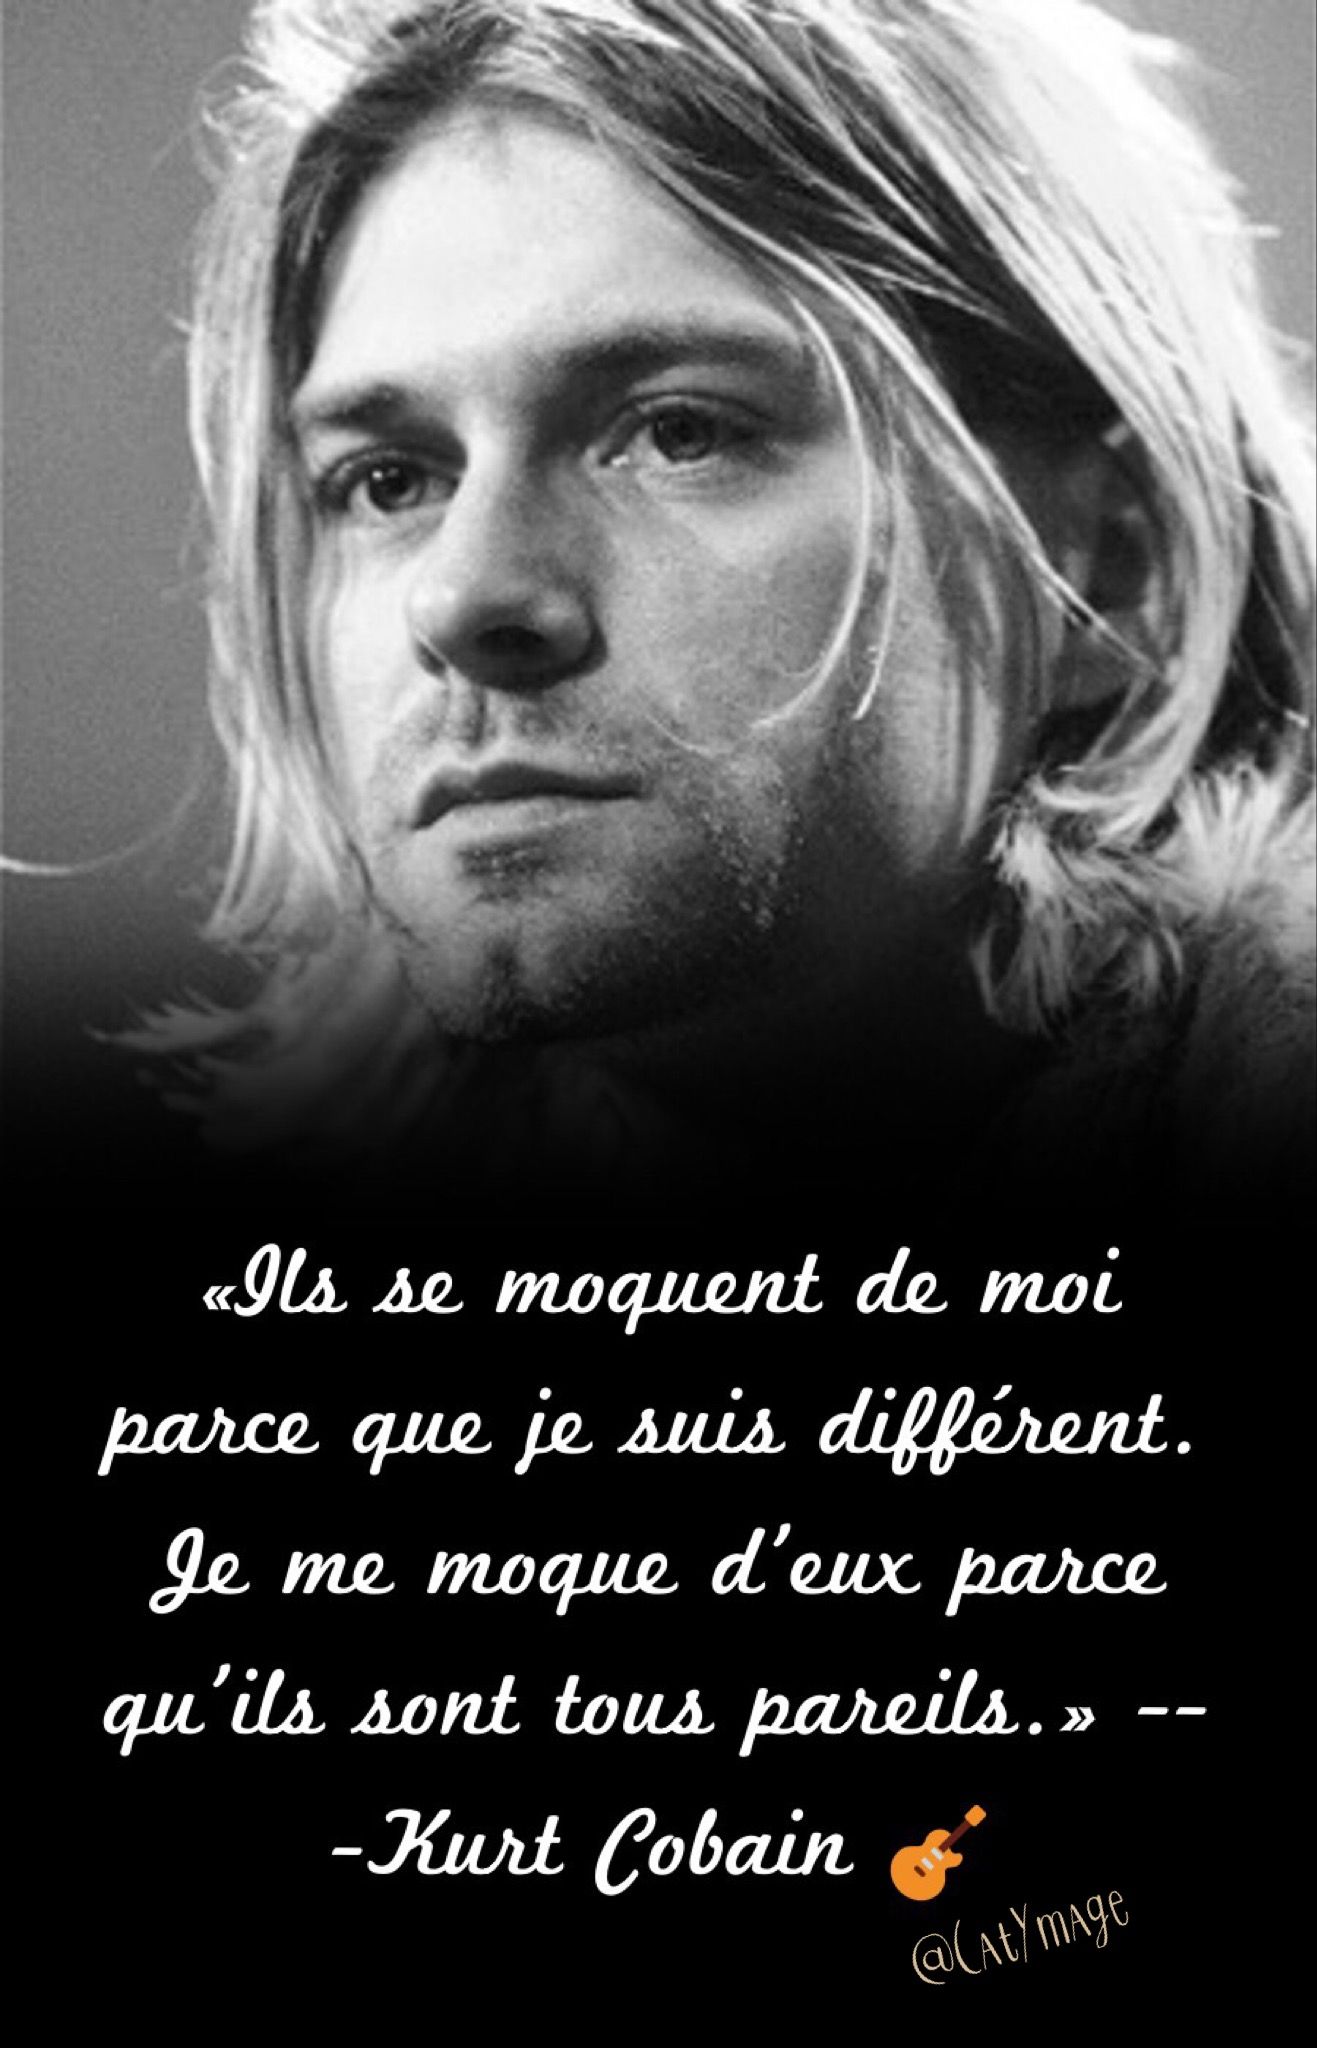 Les Mots Inoubliables De Kurt Cobain: 32 Citations Inspirantes